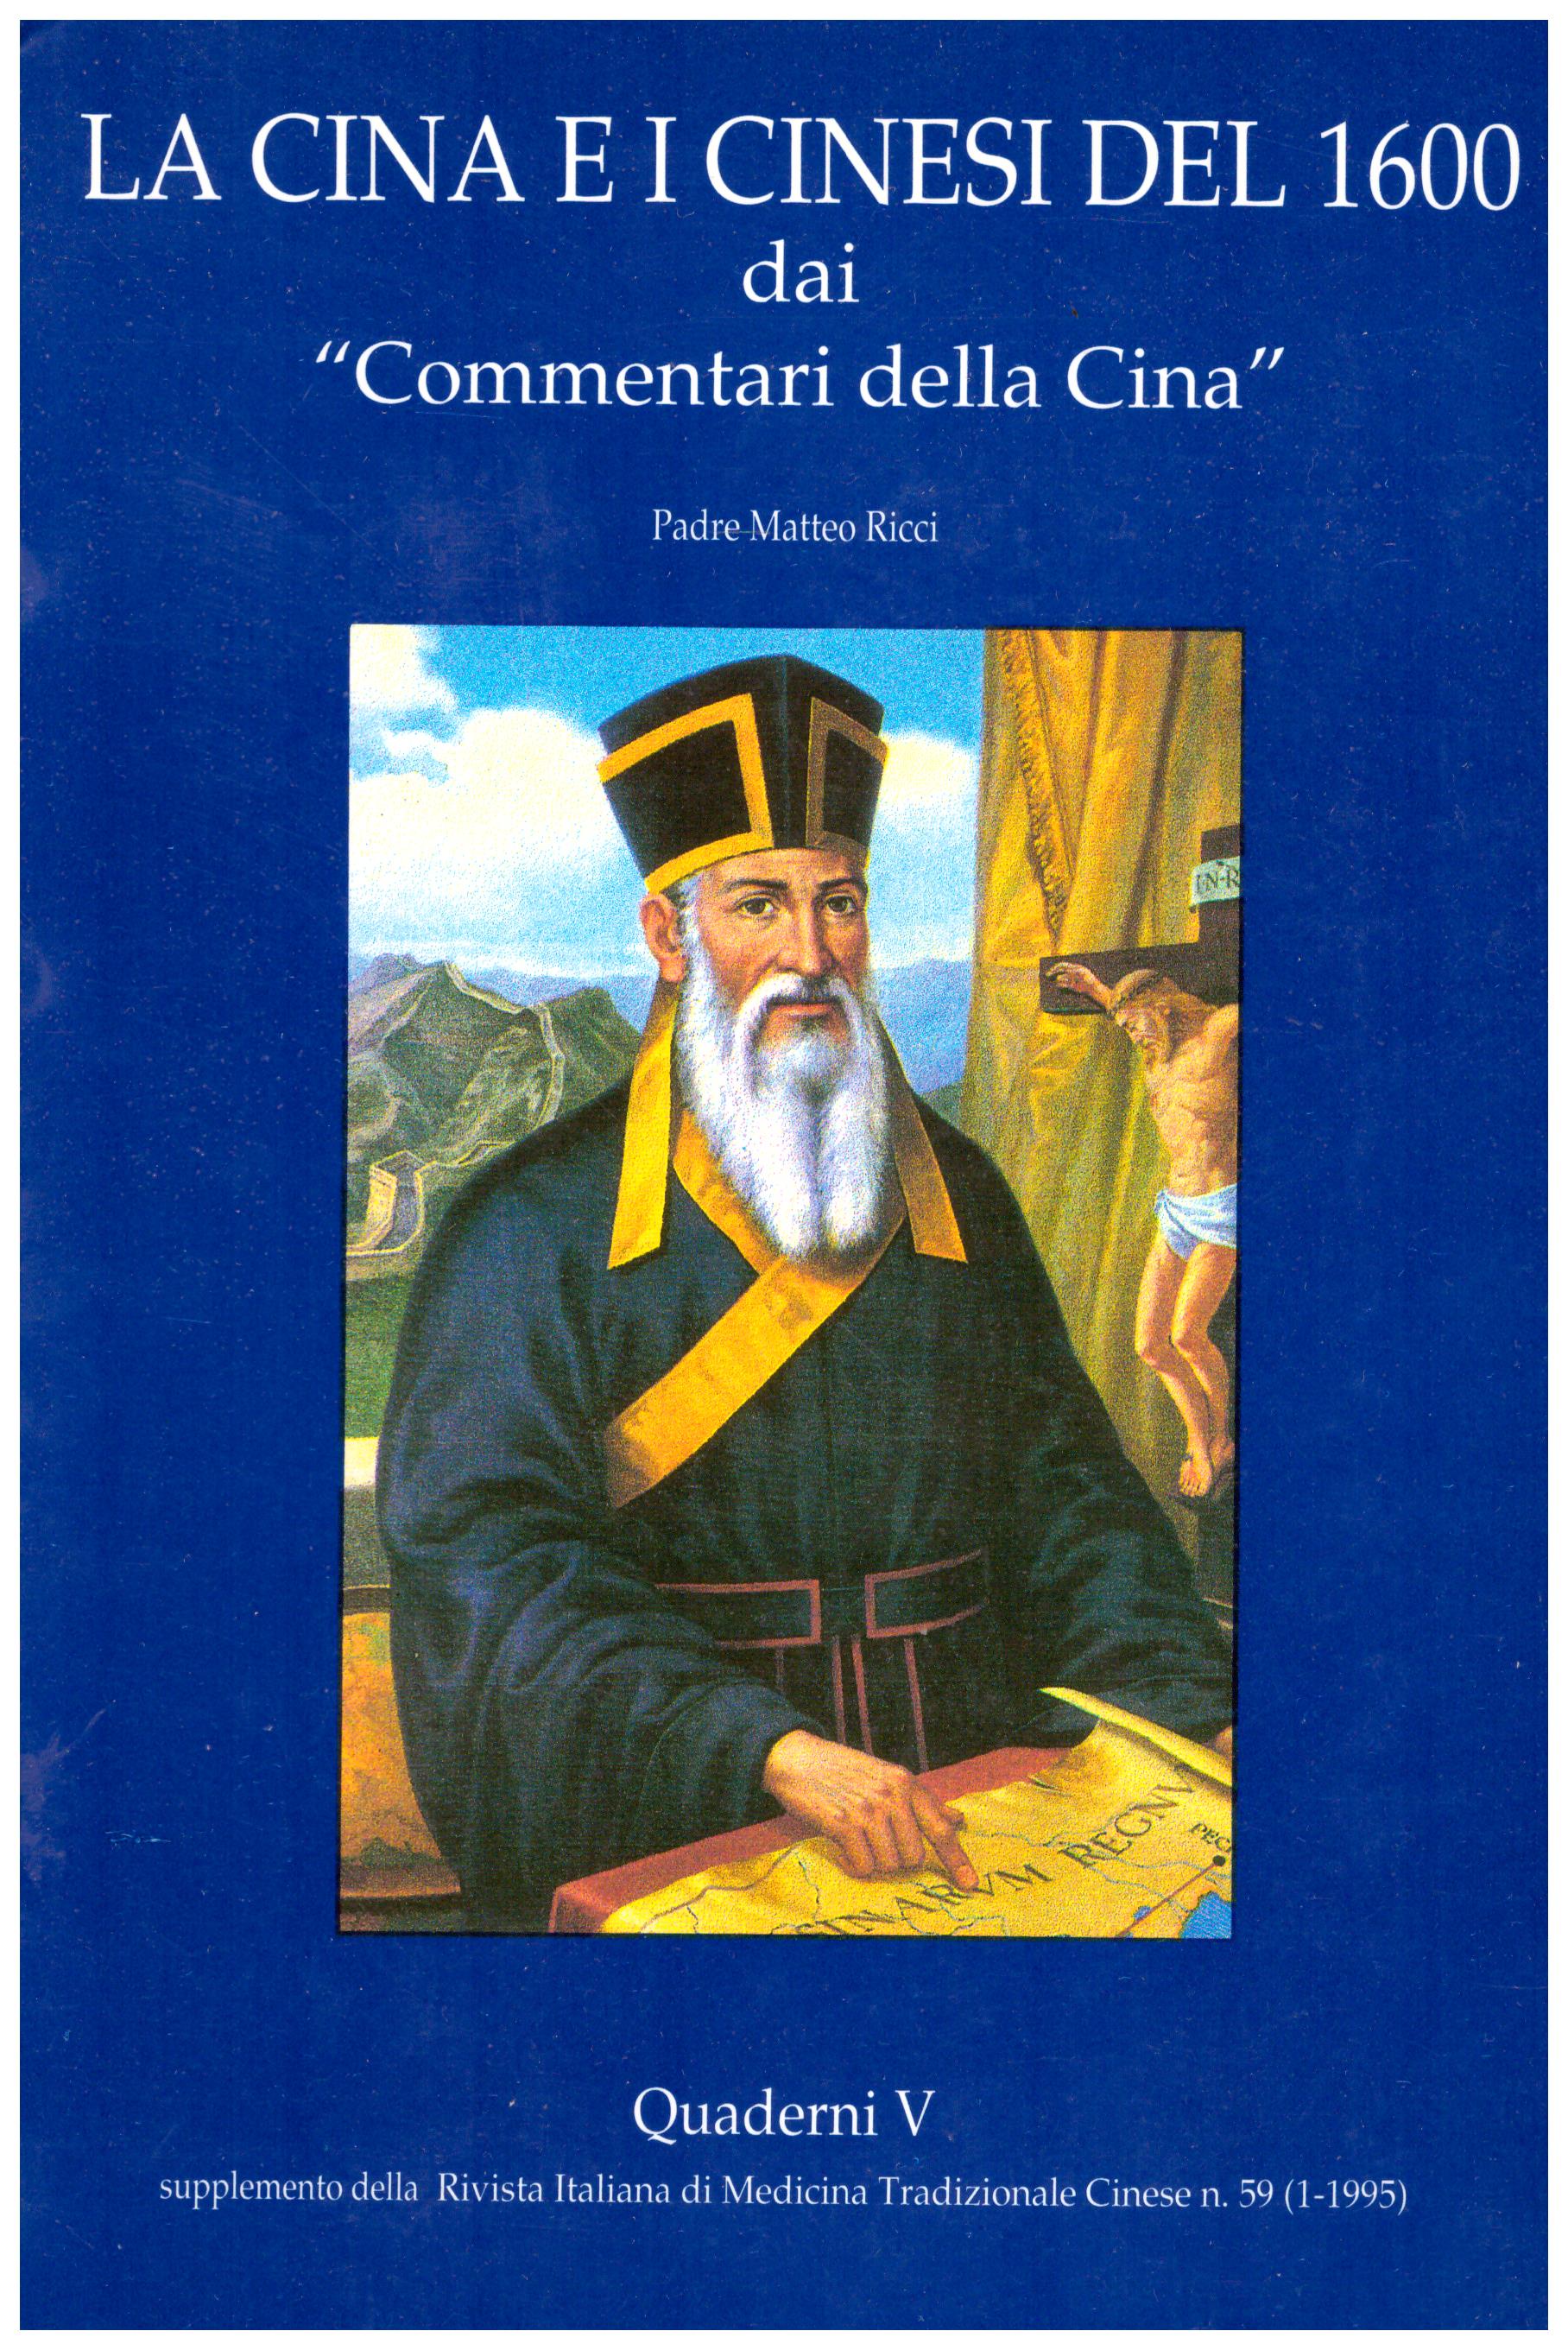 Titolo: La cina e i cinesi del 1600, Quaderni  V  Autore : Padre Matteo Ricci Editore: arti grafiche fioroni 1995